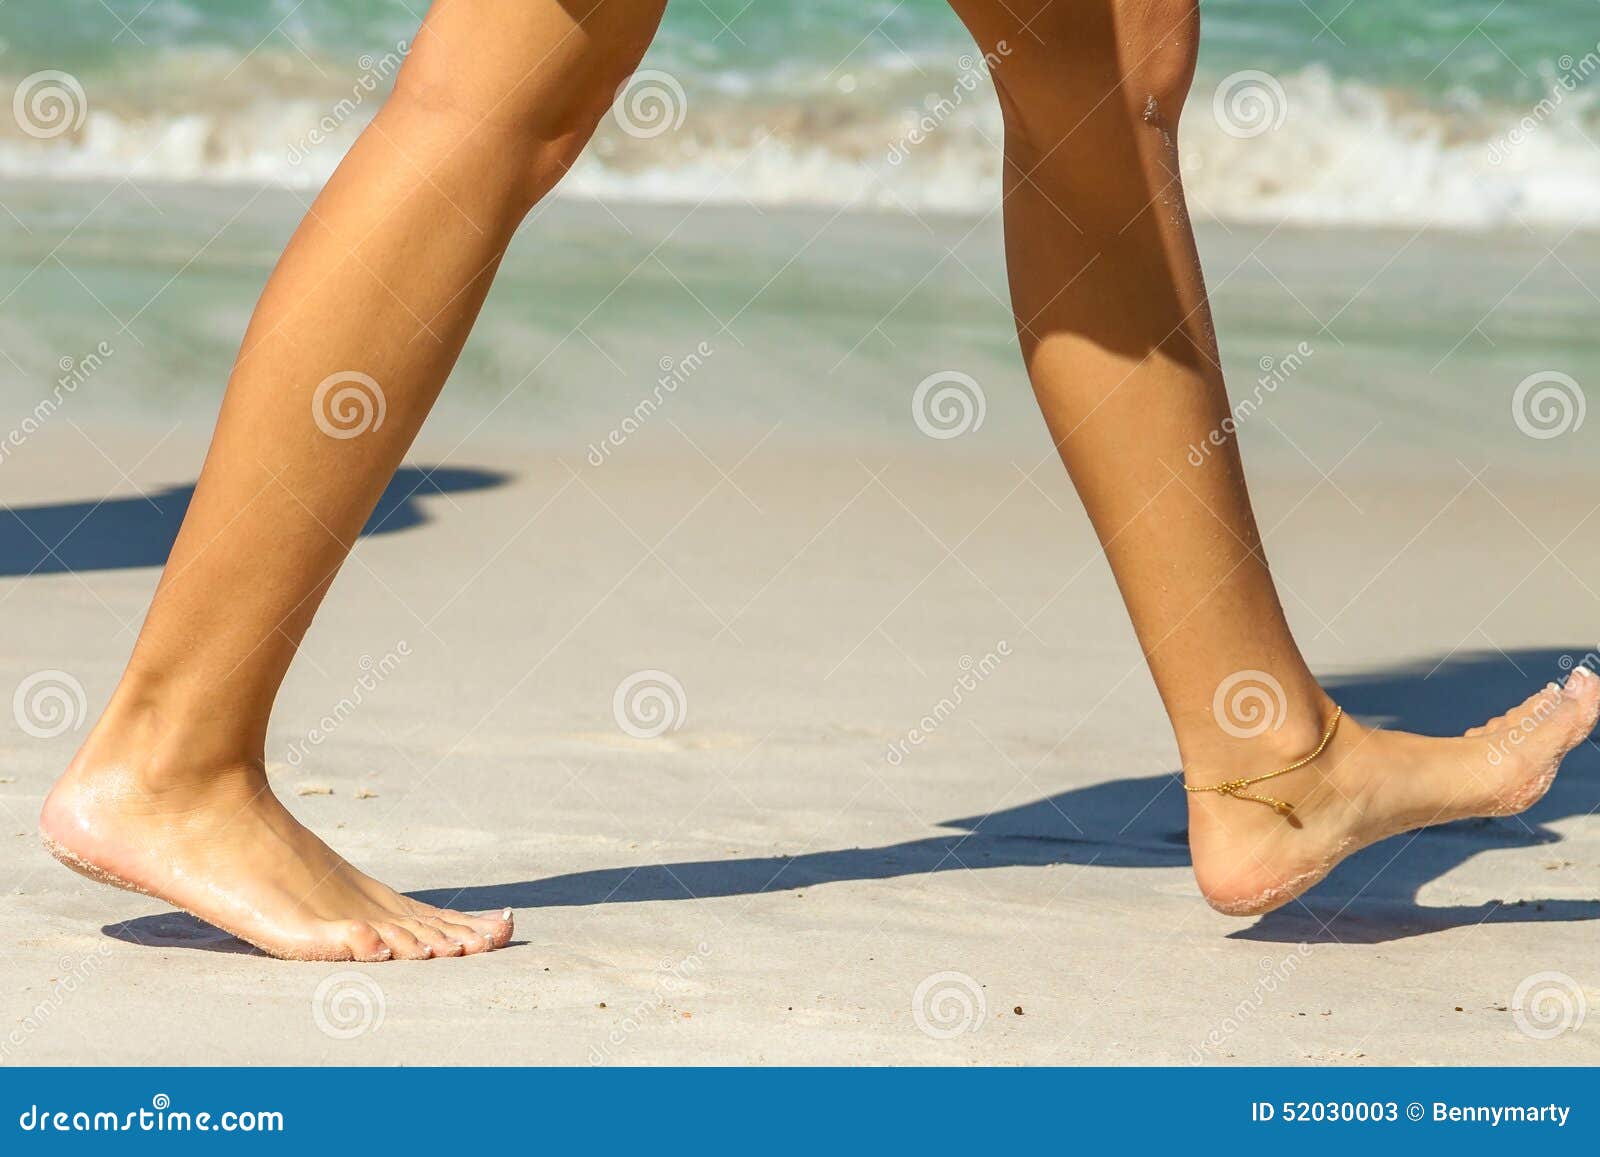 Naked Female Feet 6